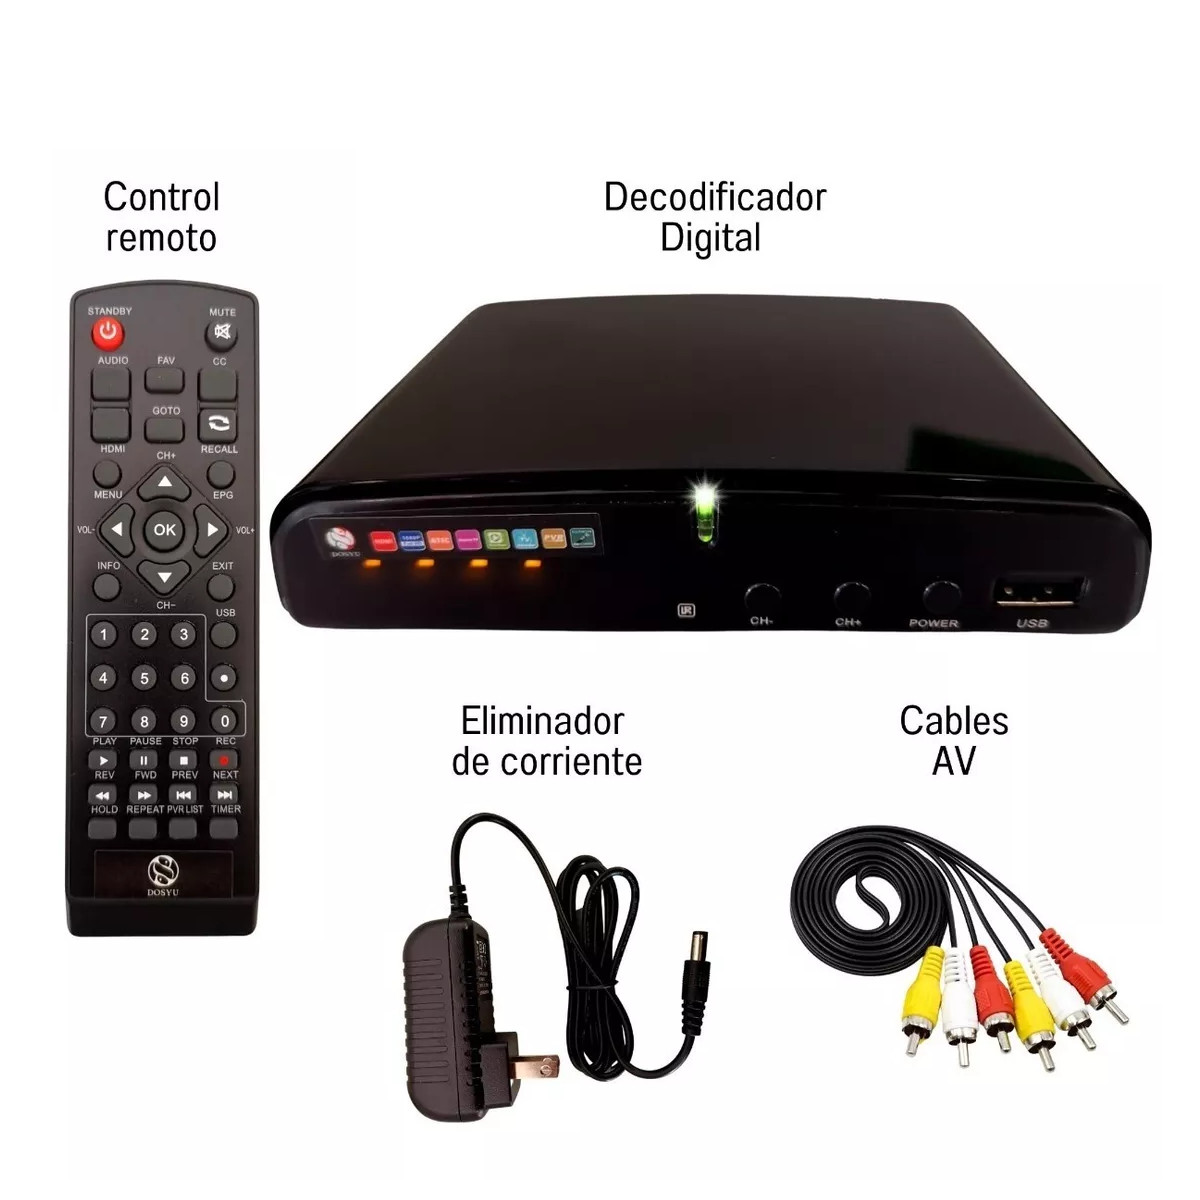 Decodificador Convertidor Digital Tv Hdmi 1080p Full Hd